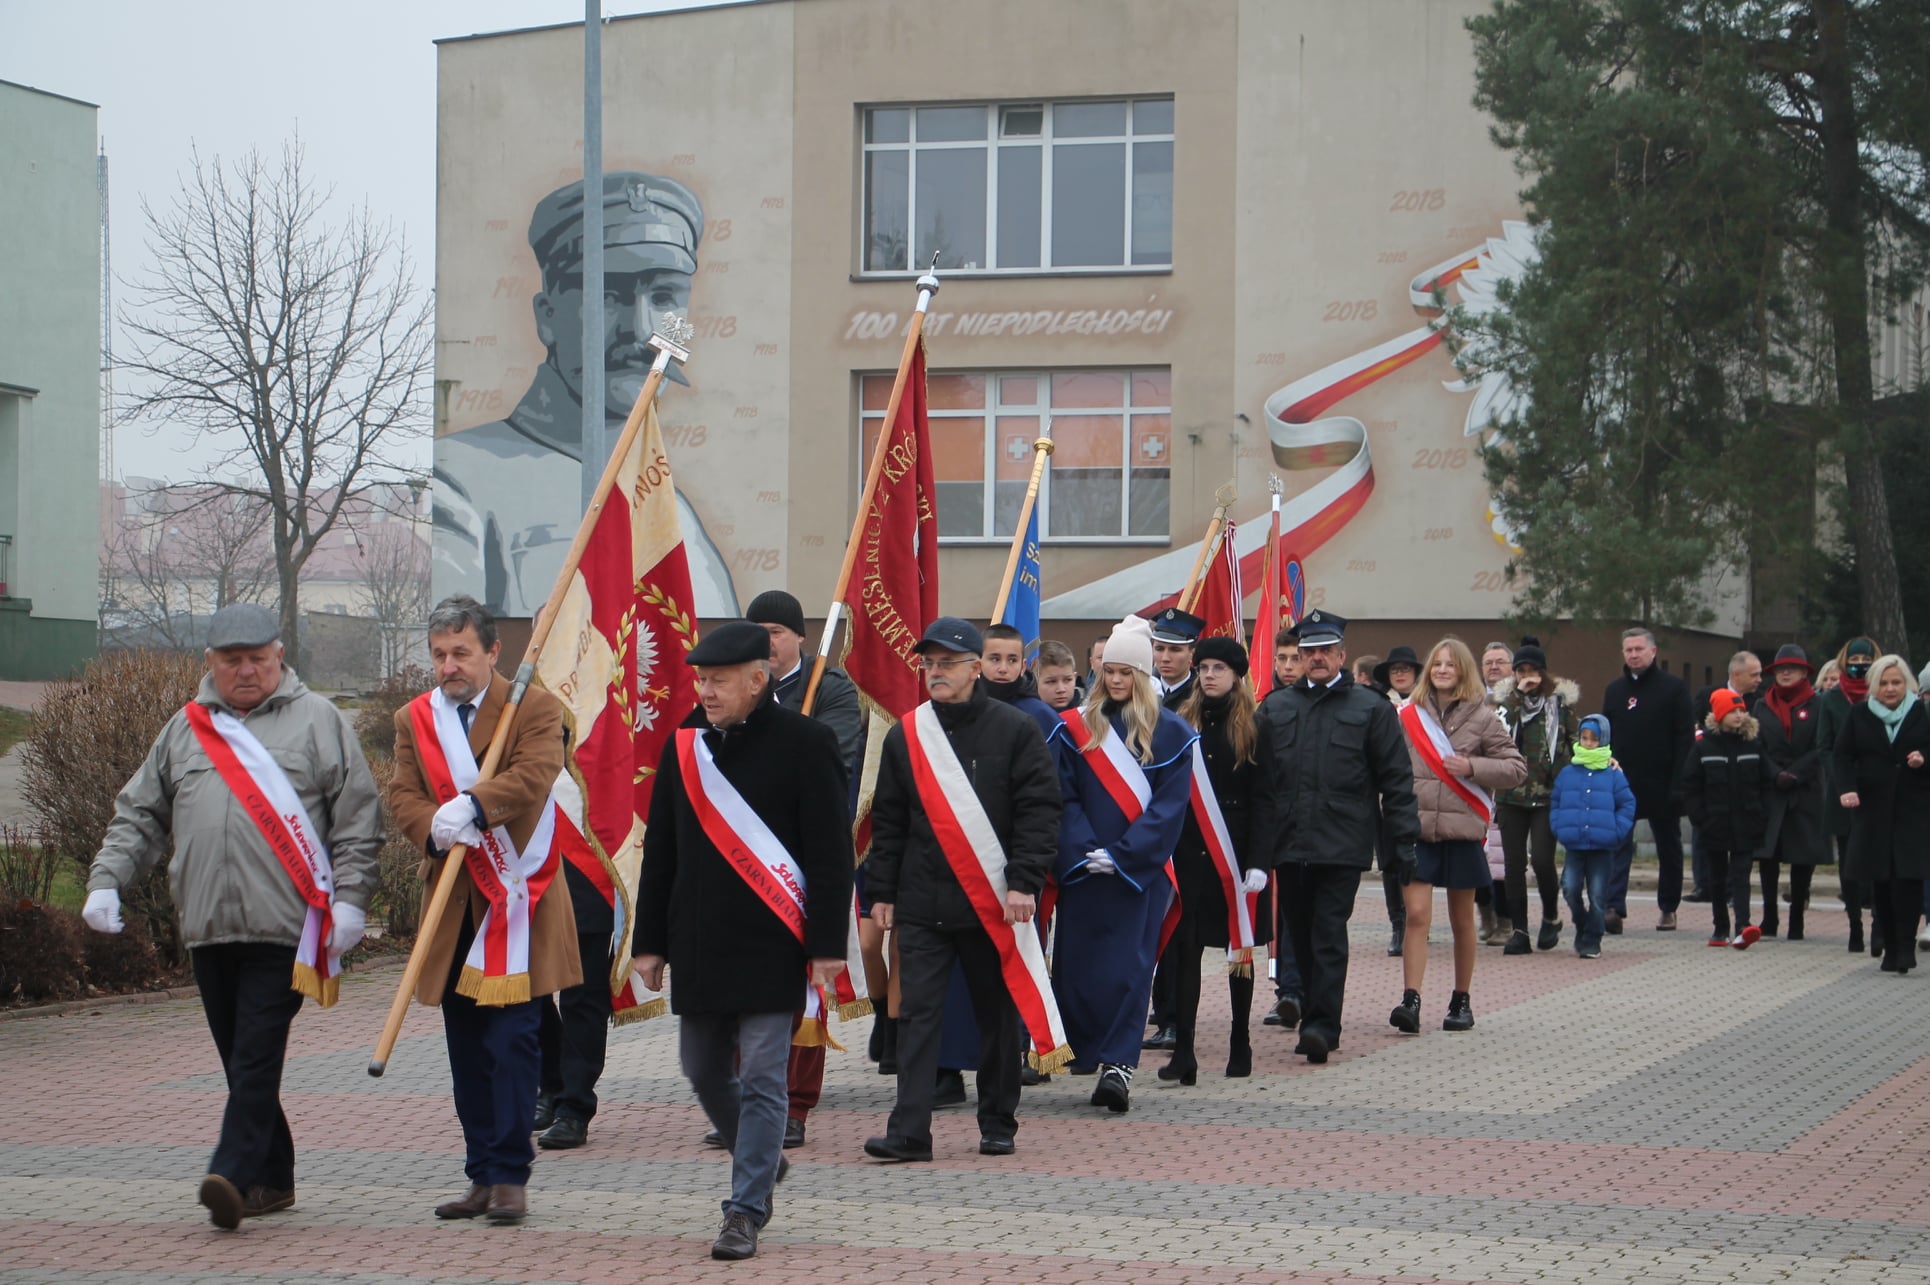 Powiatowe Obchody Dnia Niepodległości - przemarsz po mszy na Plac Konstytucji 3 maja
